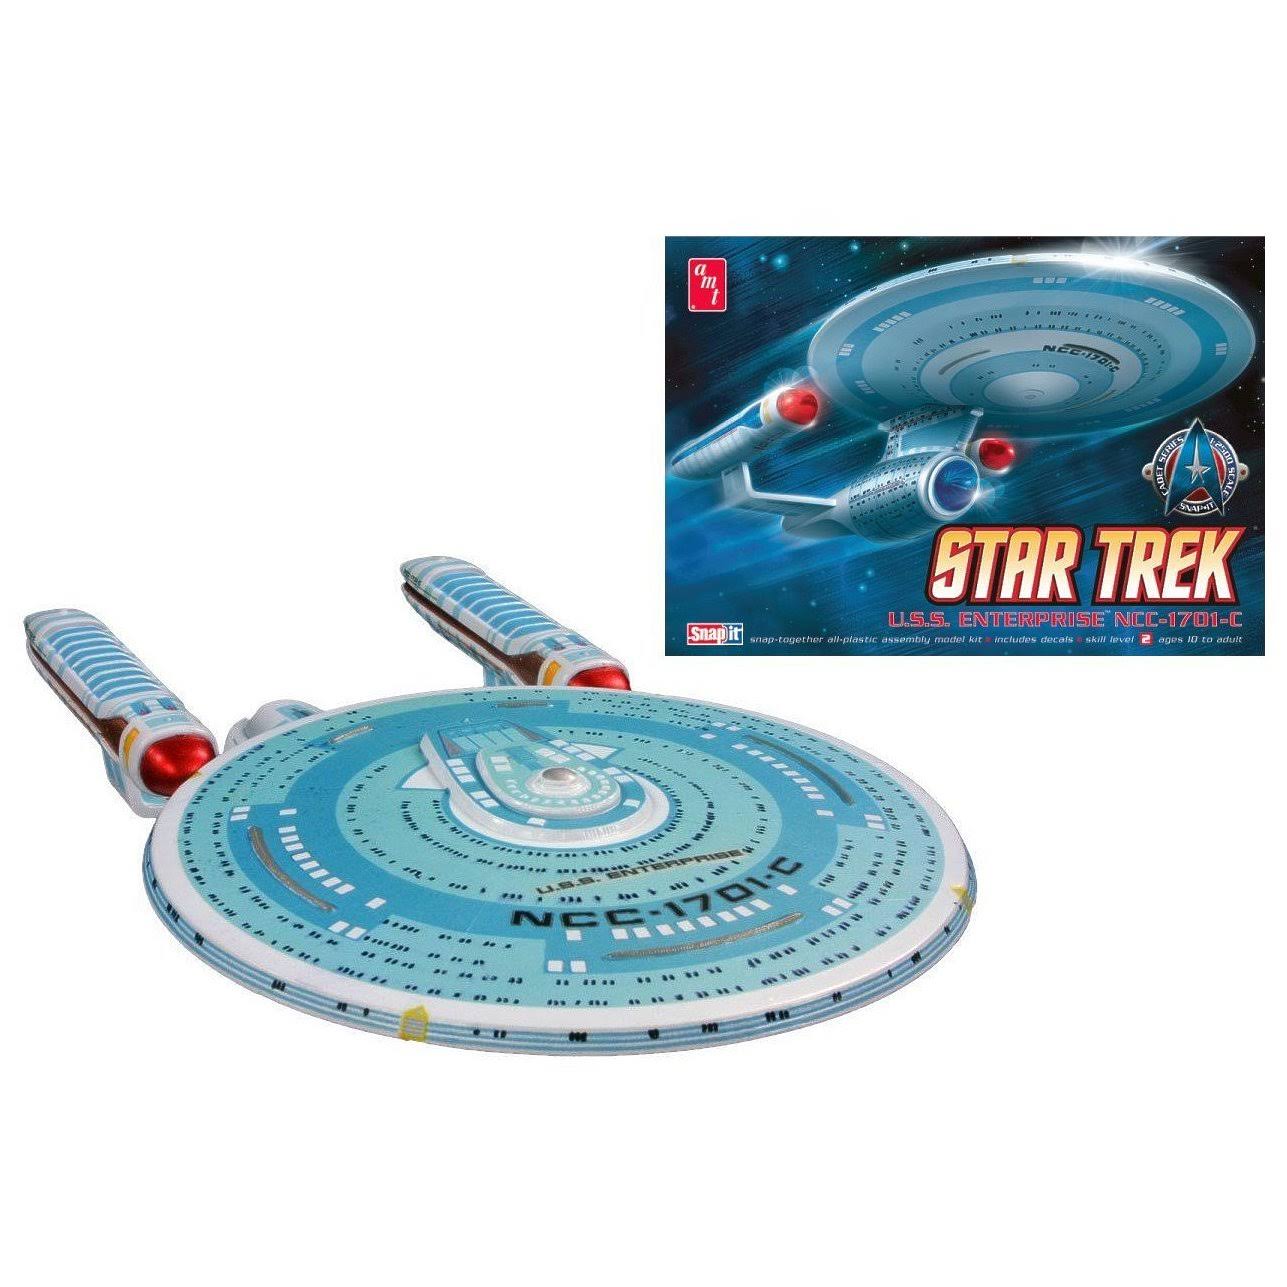 AMT 661 Star Trek Enterprise 1701-C Time Tunnel Model Kit - 1:2500 Scale